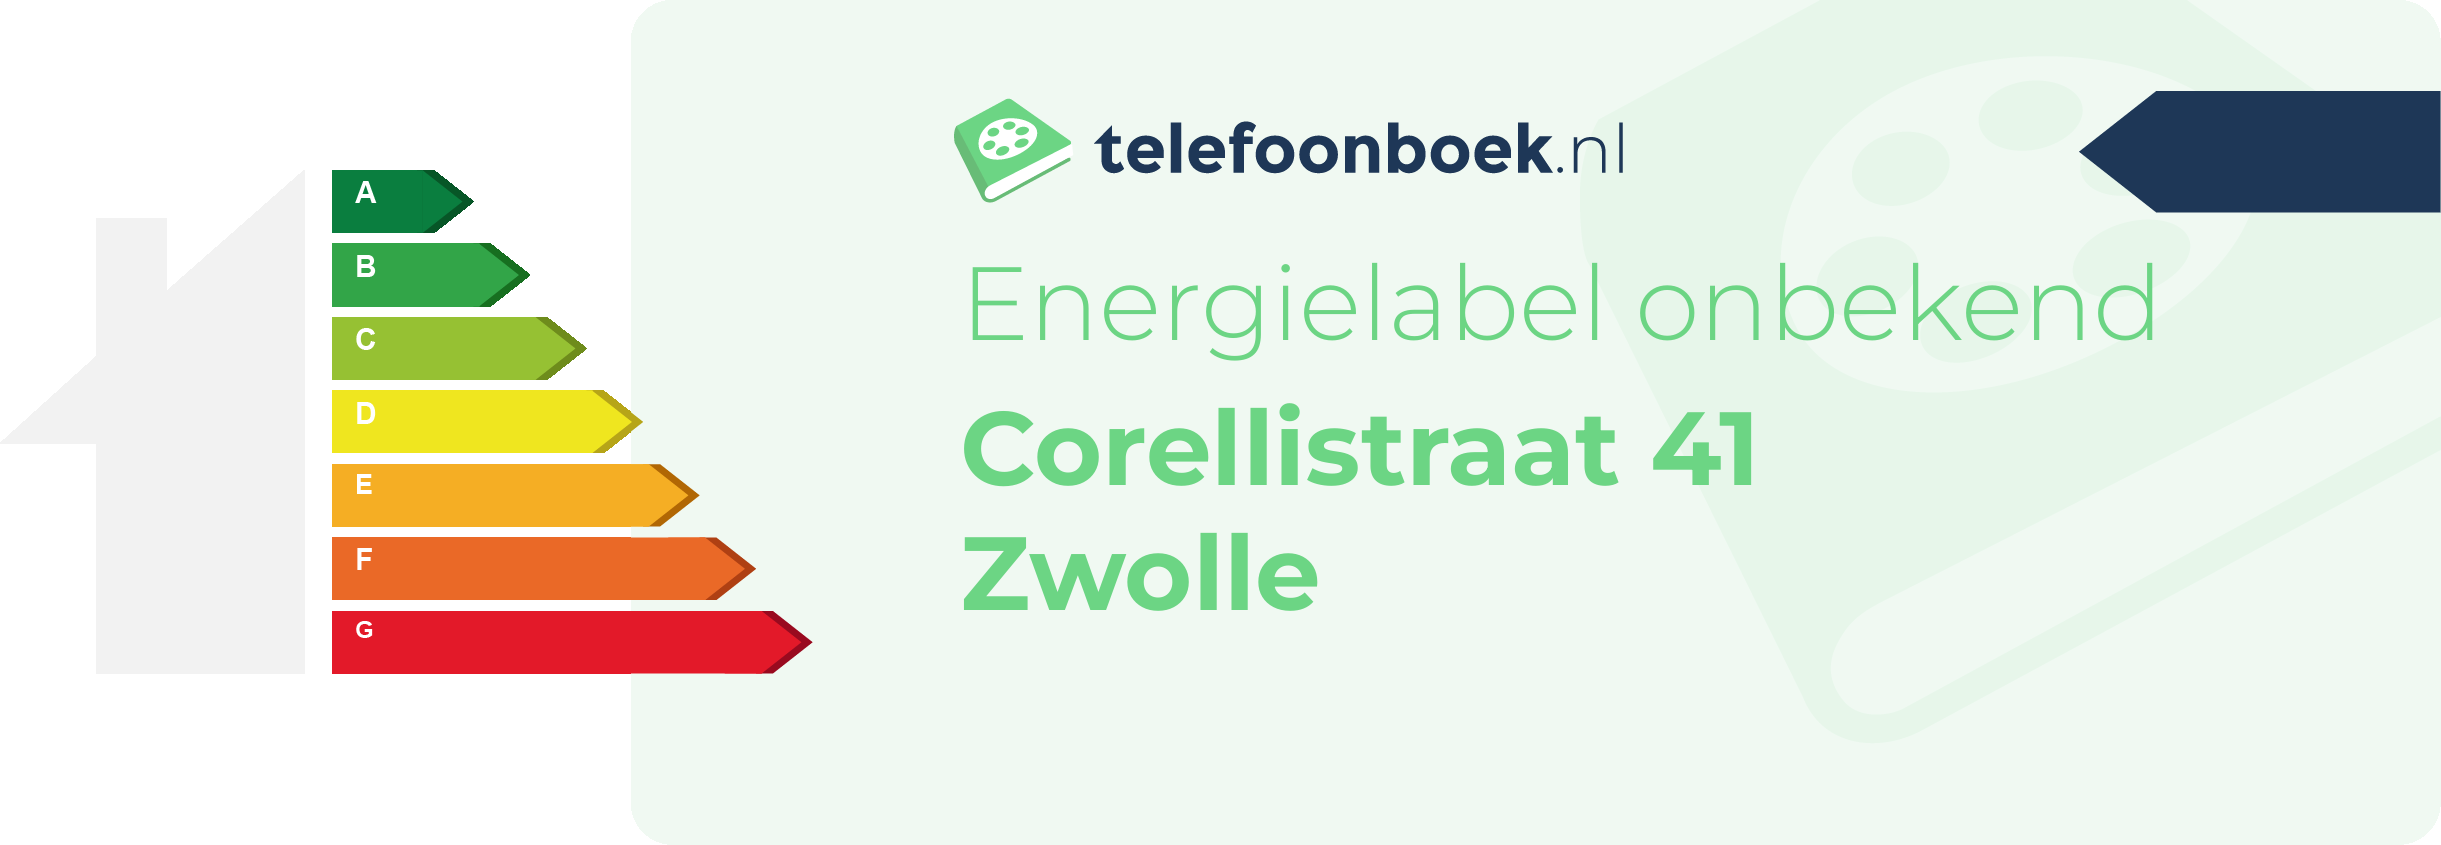 Energielabel Corellistraat 41 Zwolle